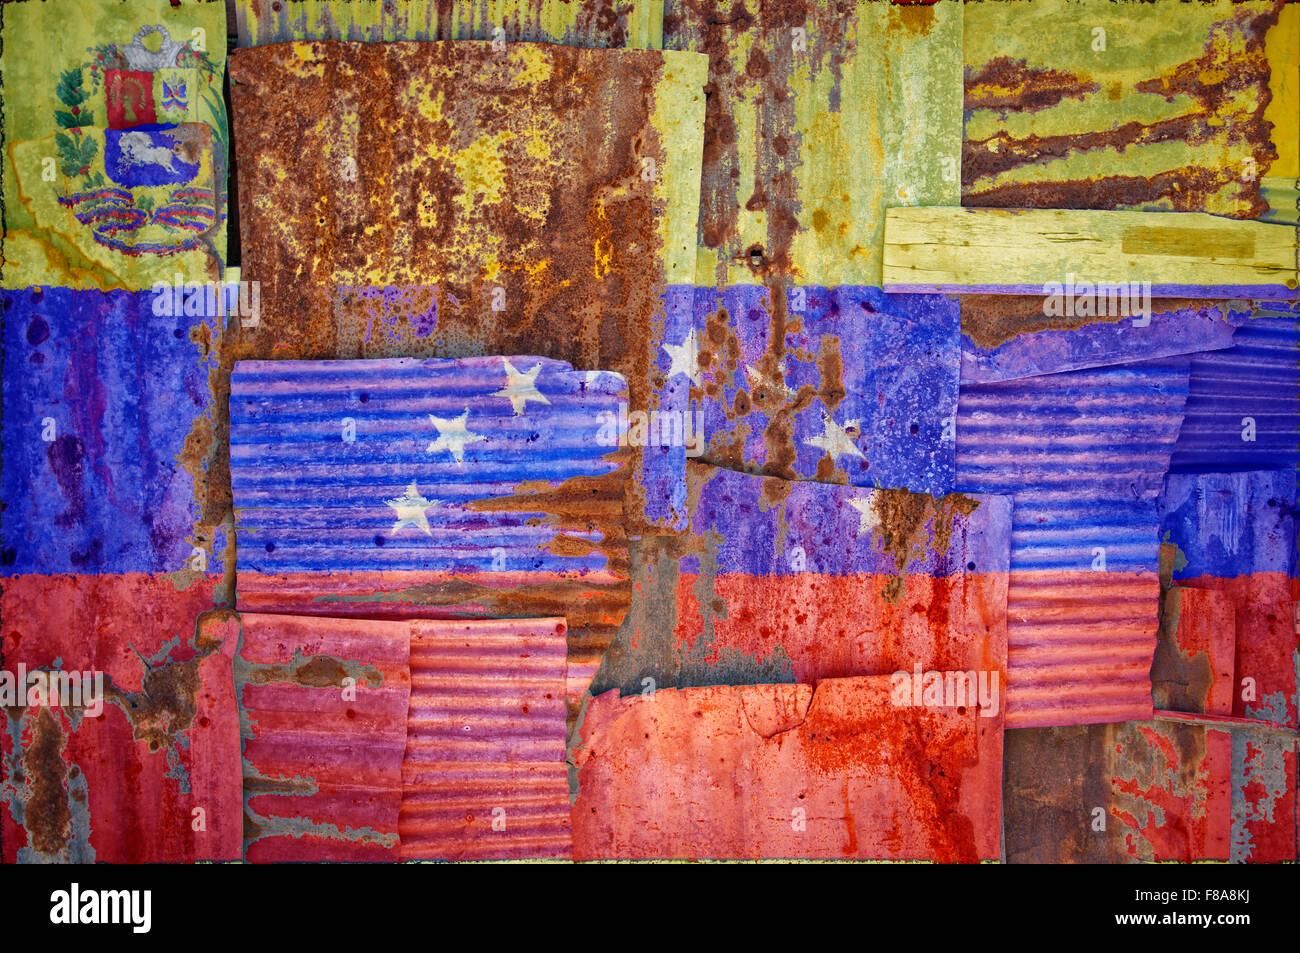 Una imagen de fondo abstracto de la bandera de Venezuela pintada en hierro oxidado hojas superpuestas para formar una pared o f Foto de stock